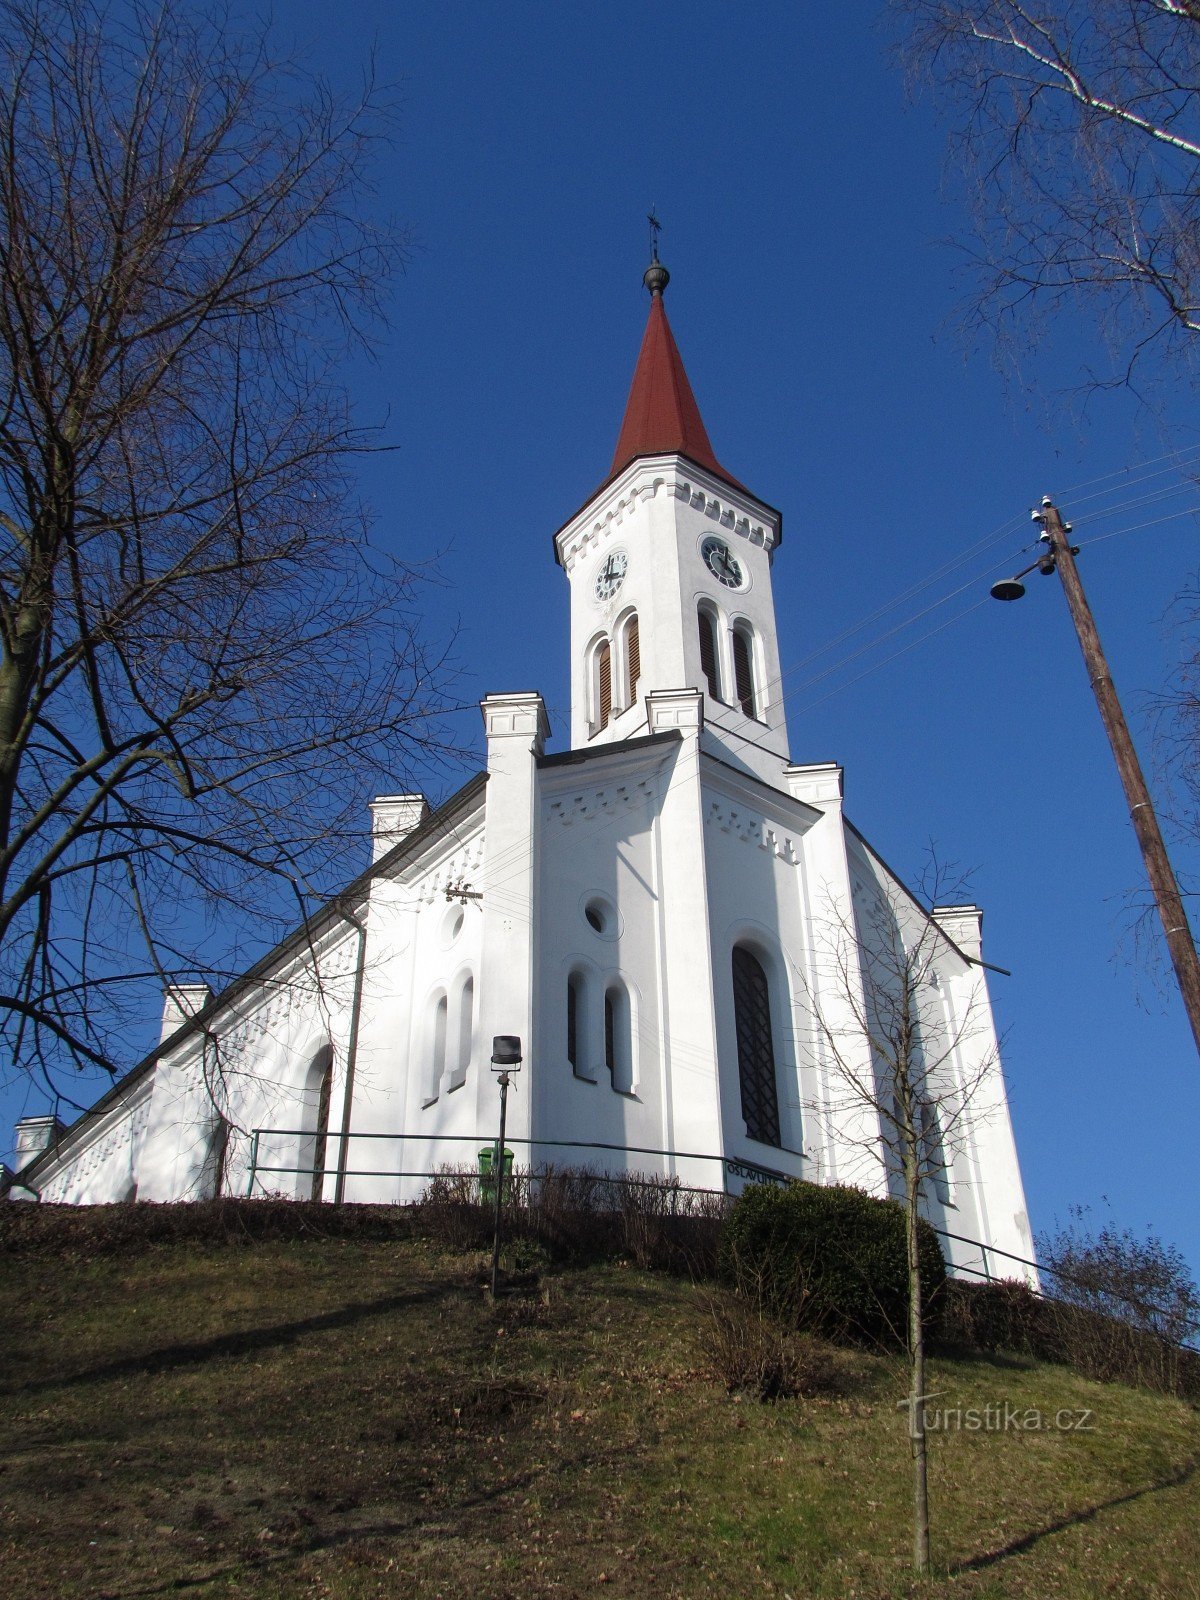 Zádveřice-Raková - evangelische Kirche